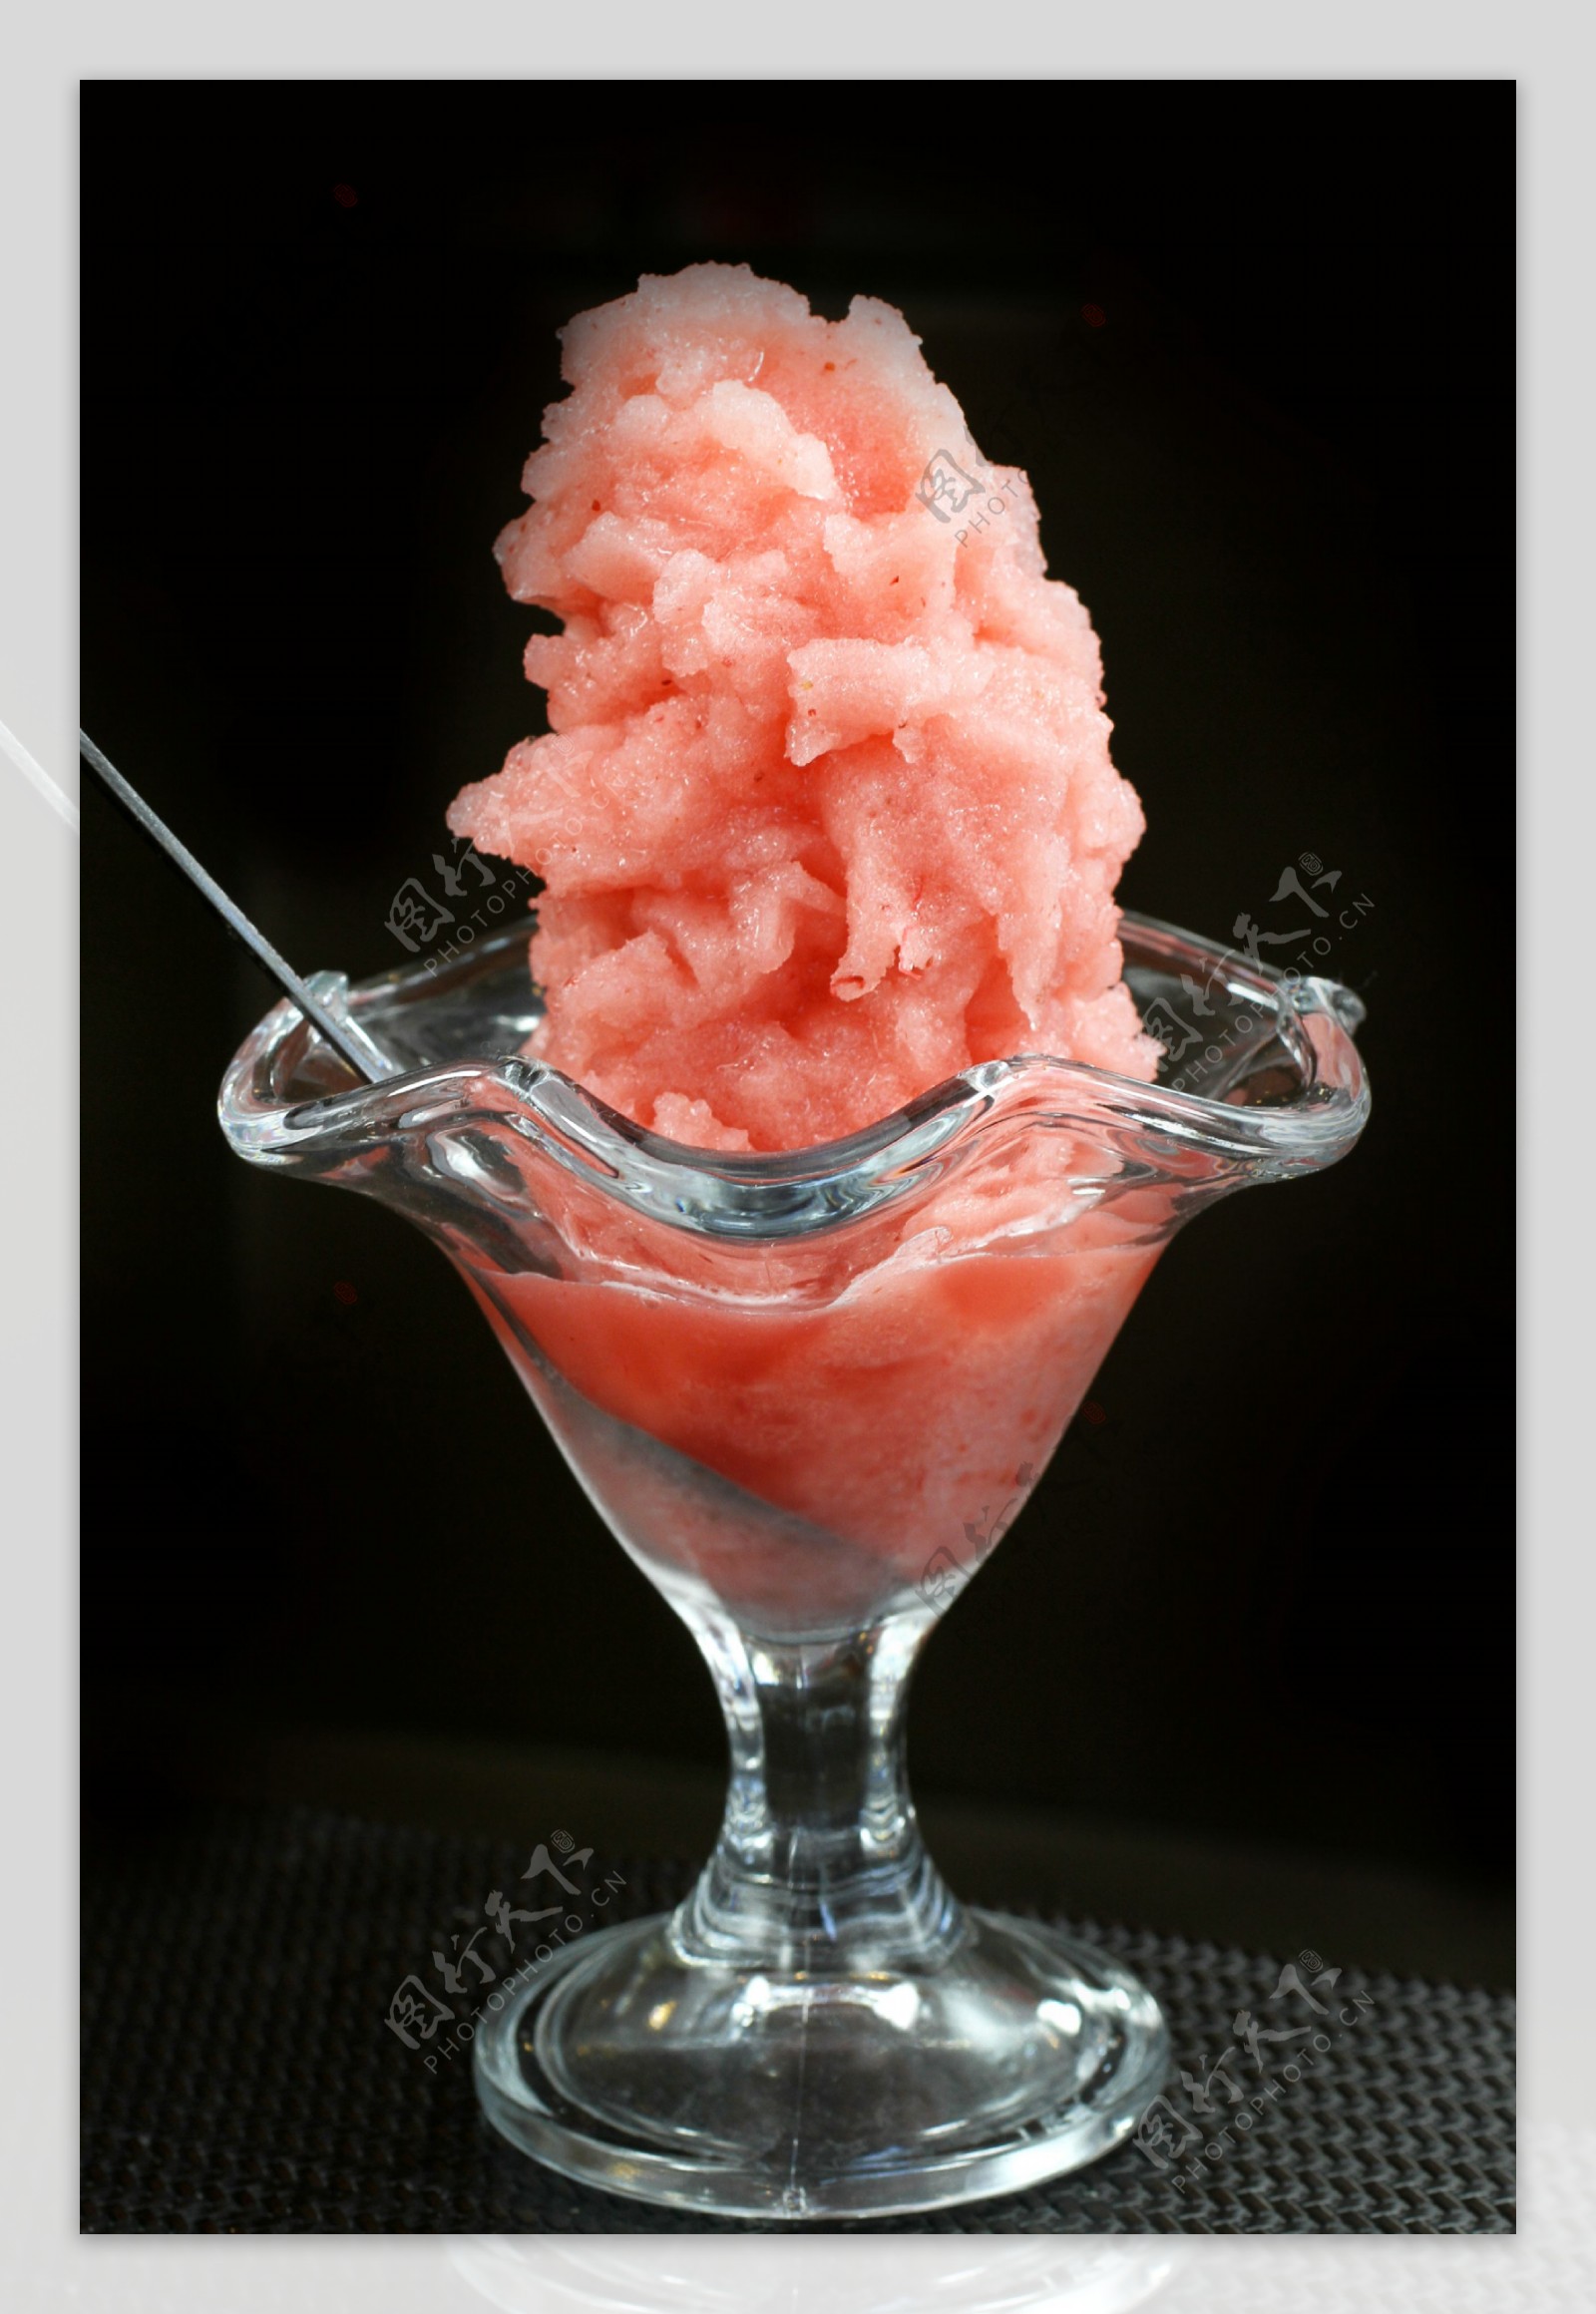 夏天最爱的西瓜冰沙食谱- Luvele US乐动-官网活动